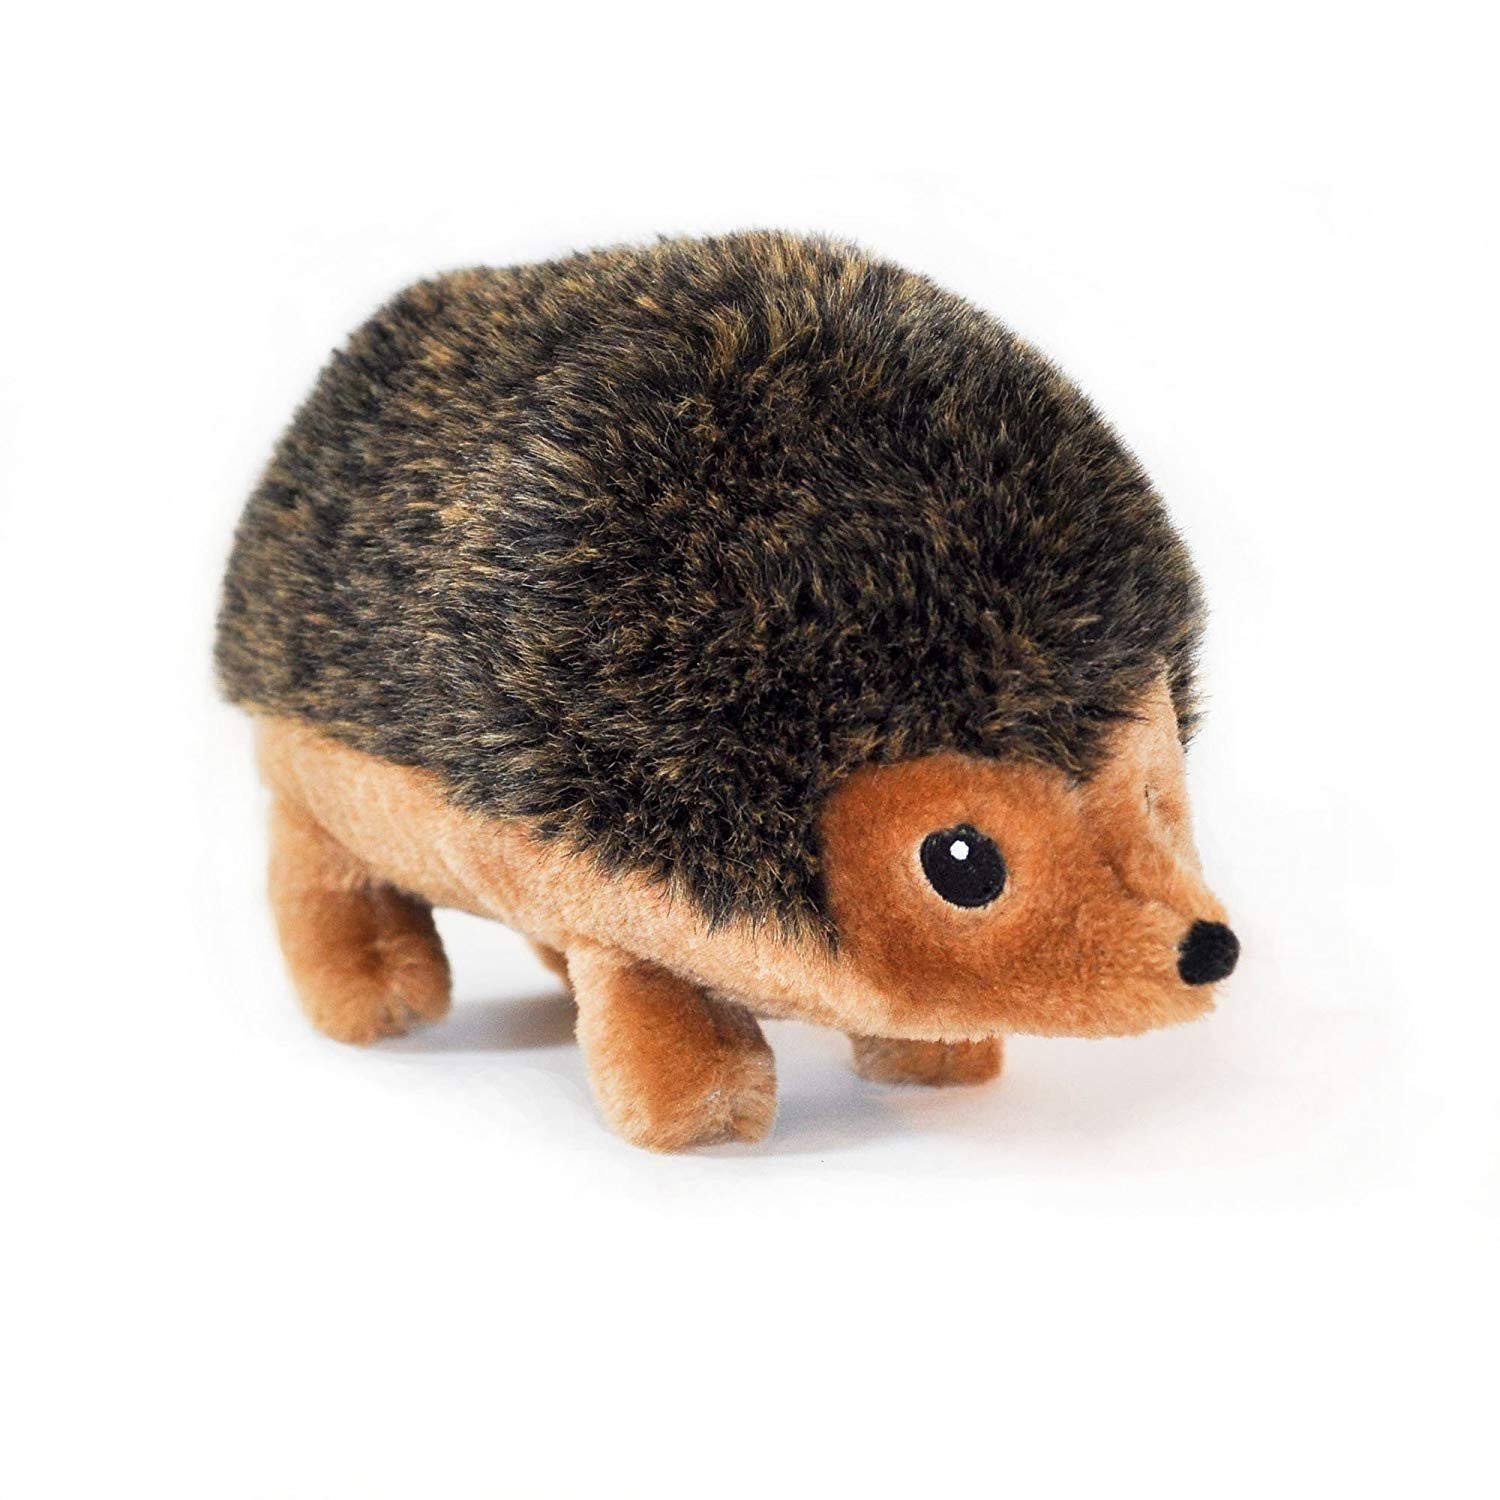 ZippyPaws Hedgehog Squeaky Plush Dog Toy - 12", X-Large